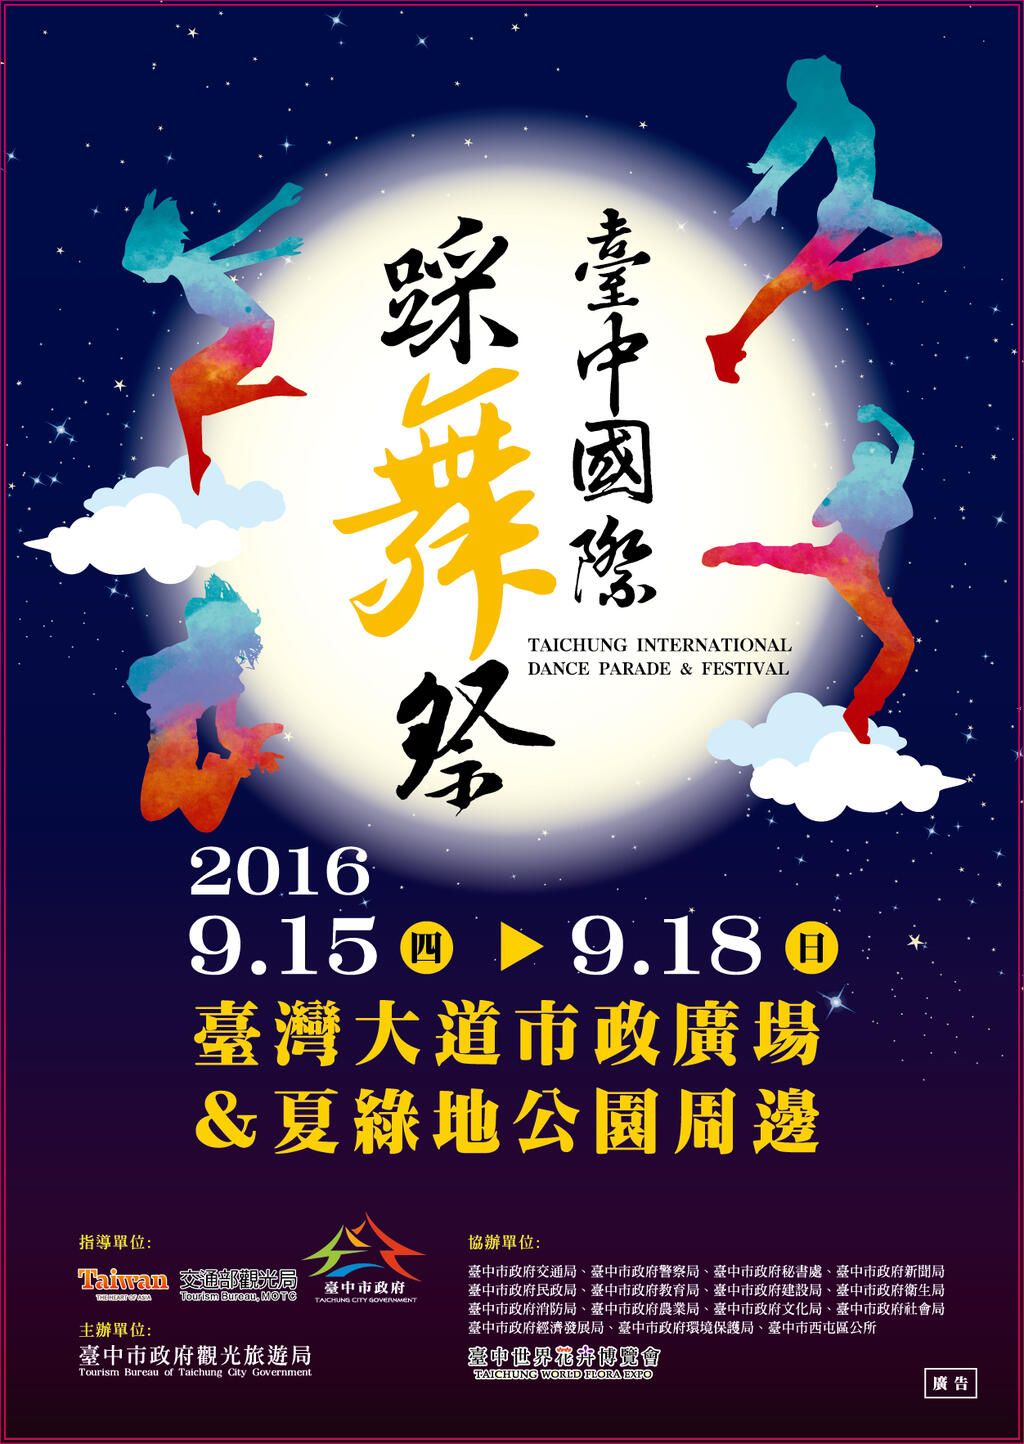 :2016臺中國際踩舞祭 市政廣場&夏綠地公園